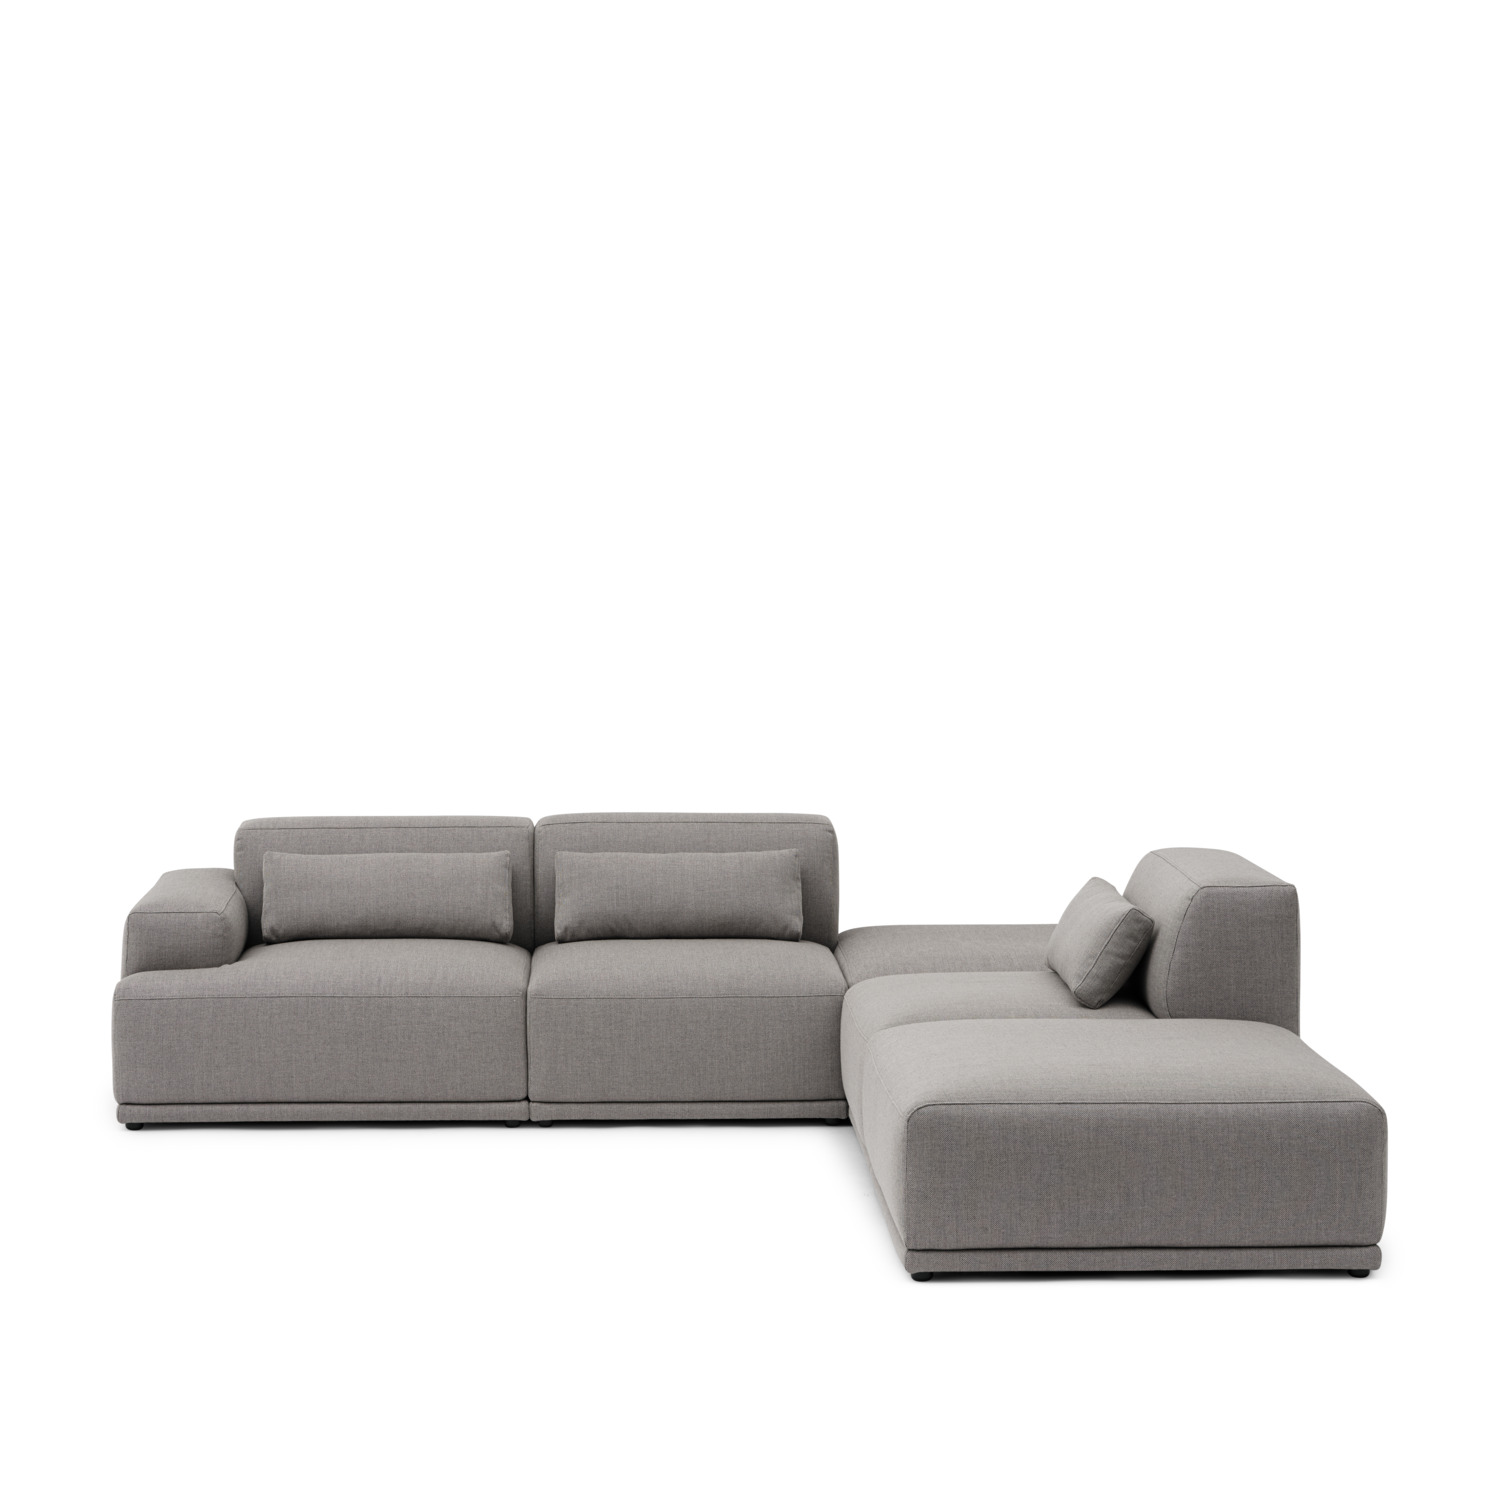 Connect Soft Modular Sofa | A deep comfort